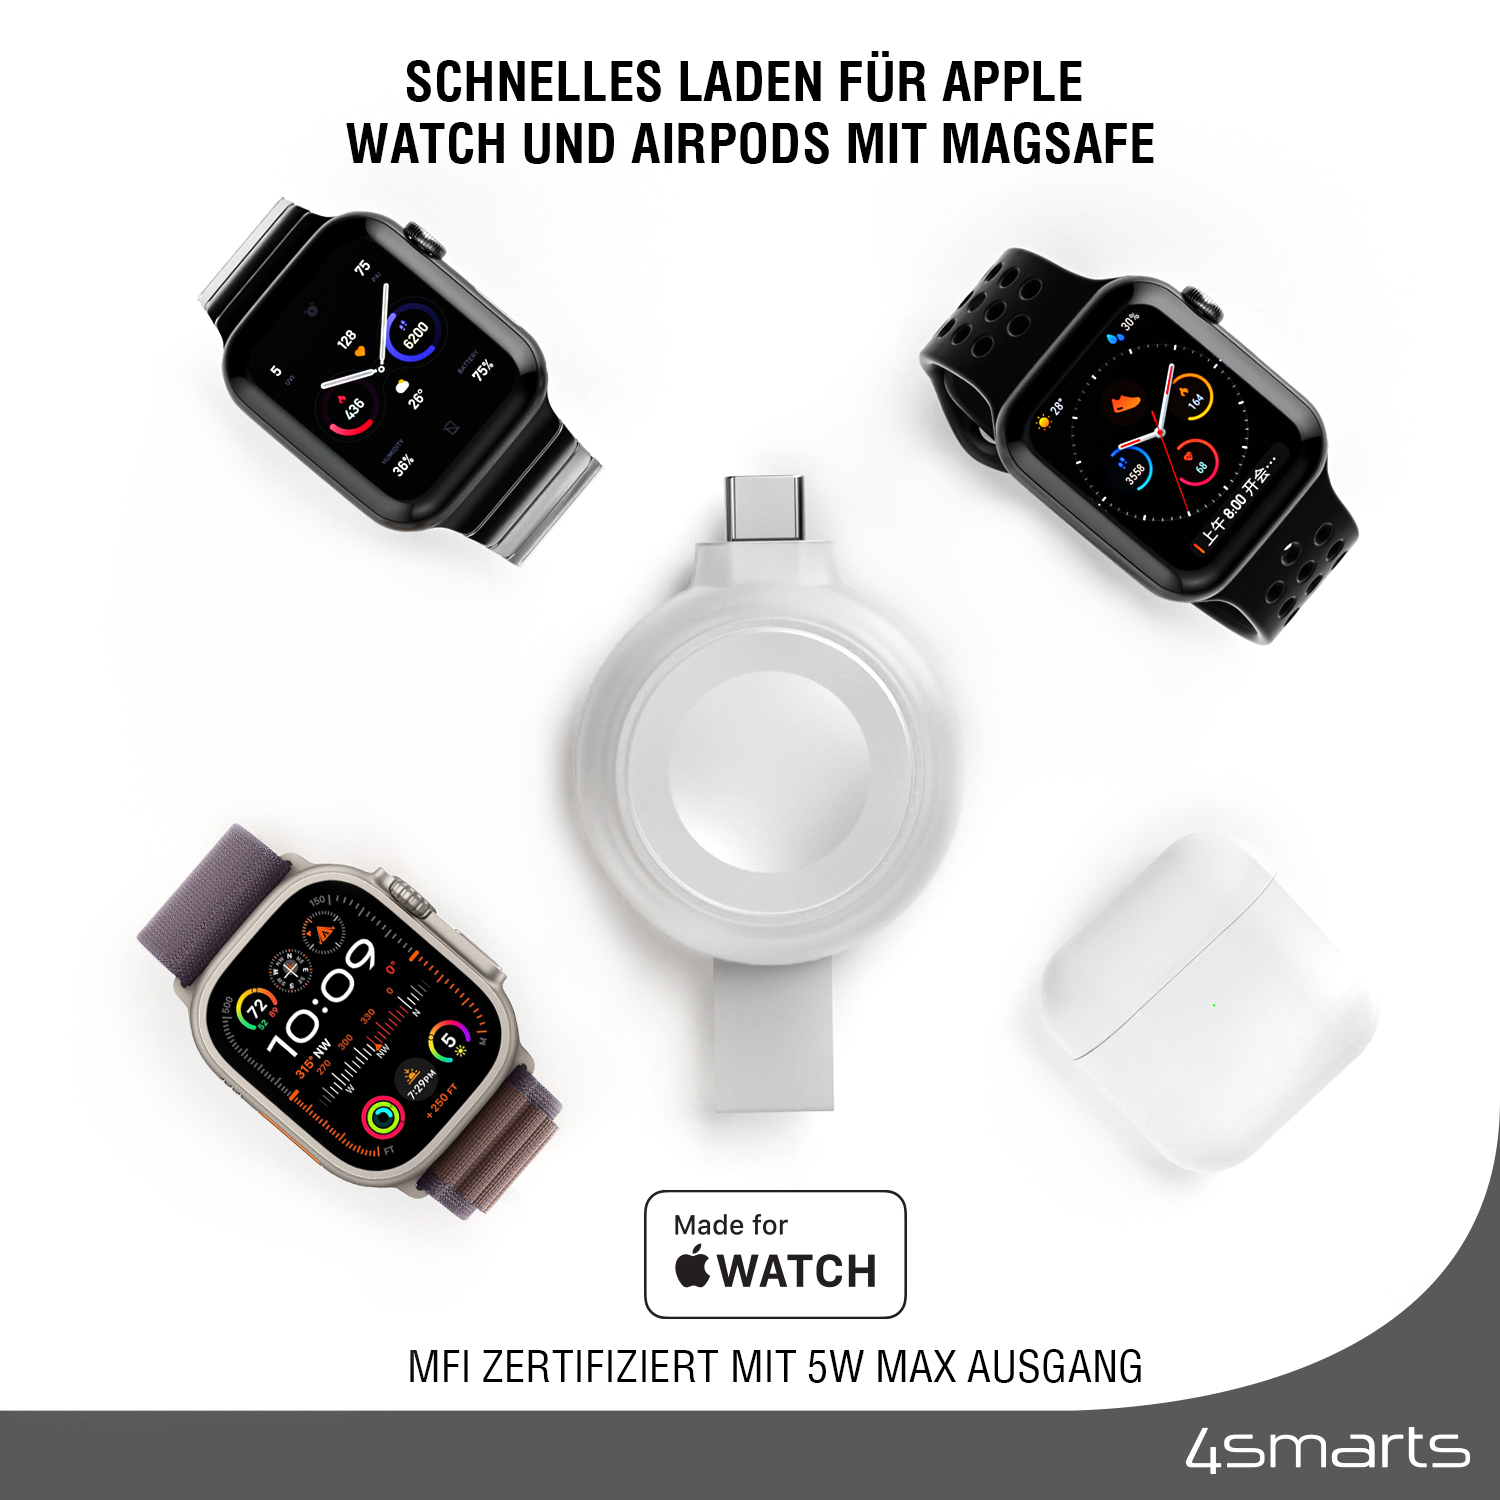 Mit dem 4smarts MFi Fast Charger ist auch ein schnelles Aufladen mit MagSafe für die Apple Watch und die AirPods möglich.